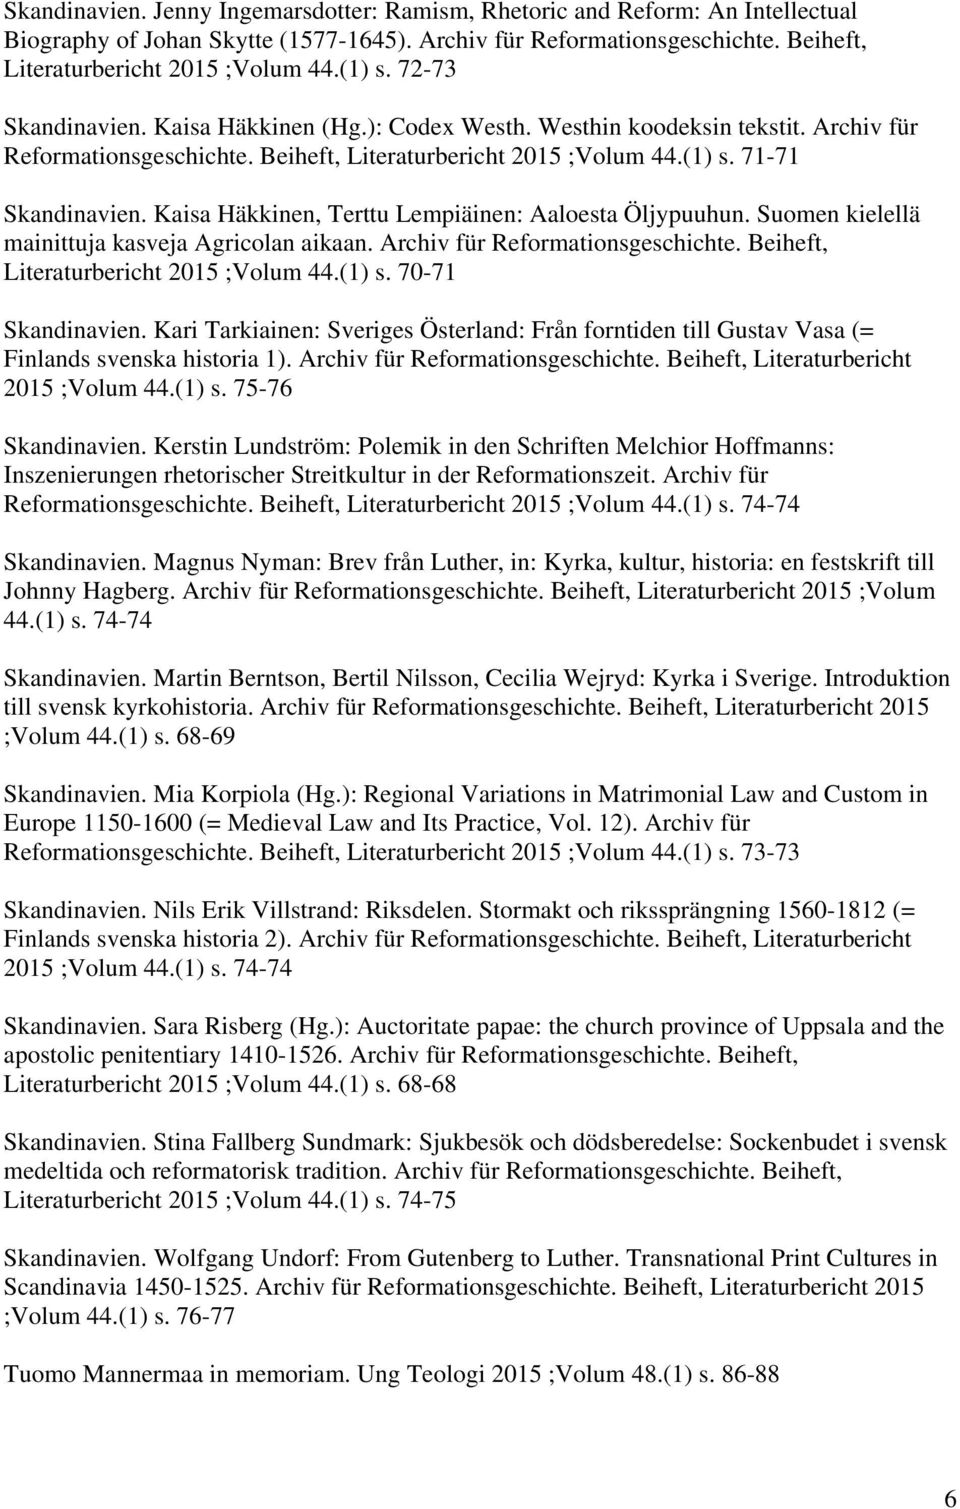 Kaisa Häkkinen, Terttu Lempiäinen: Aaloesta Öljypuuhun. Suomen kielellä mainittuja kasveja Agricolan aikaan. Archiv für Reformationsgeschichte. Beiheft, Literaturbericht 2015 ;Volum 44.(1) s.